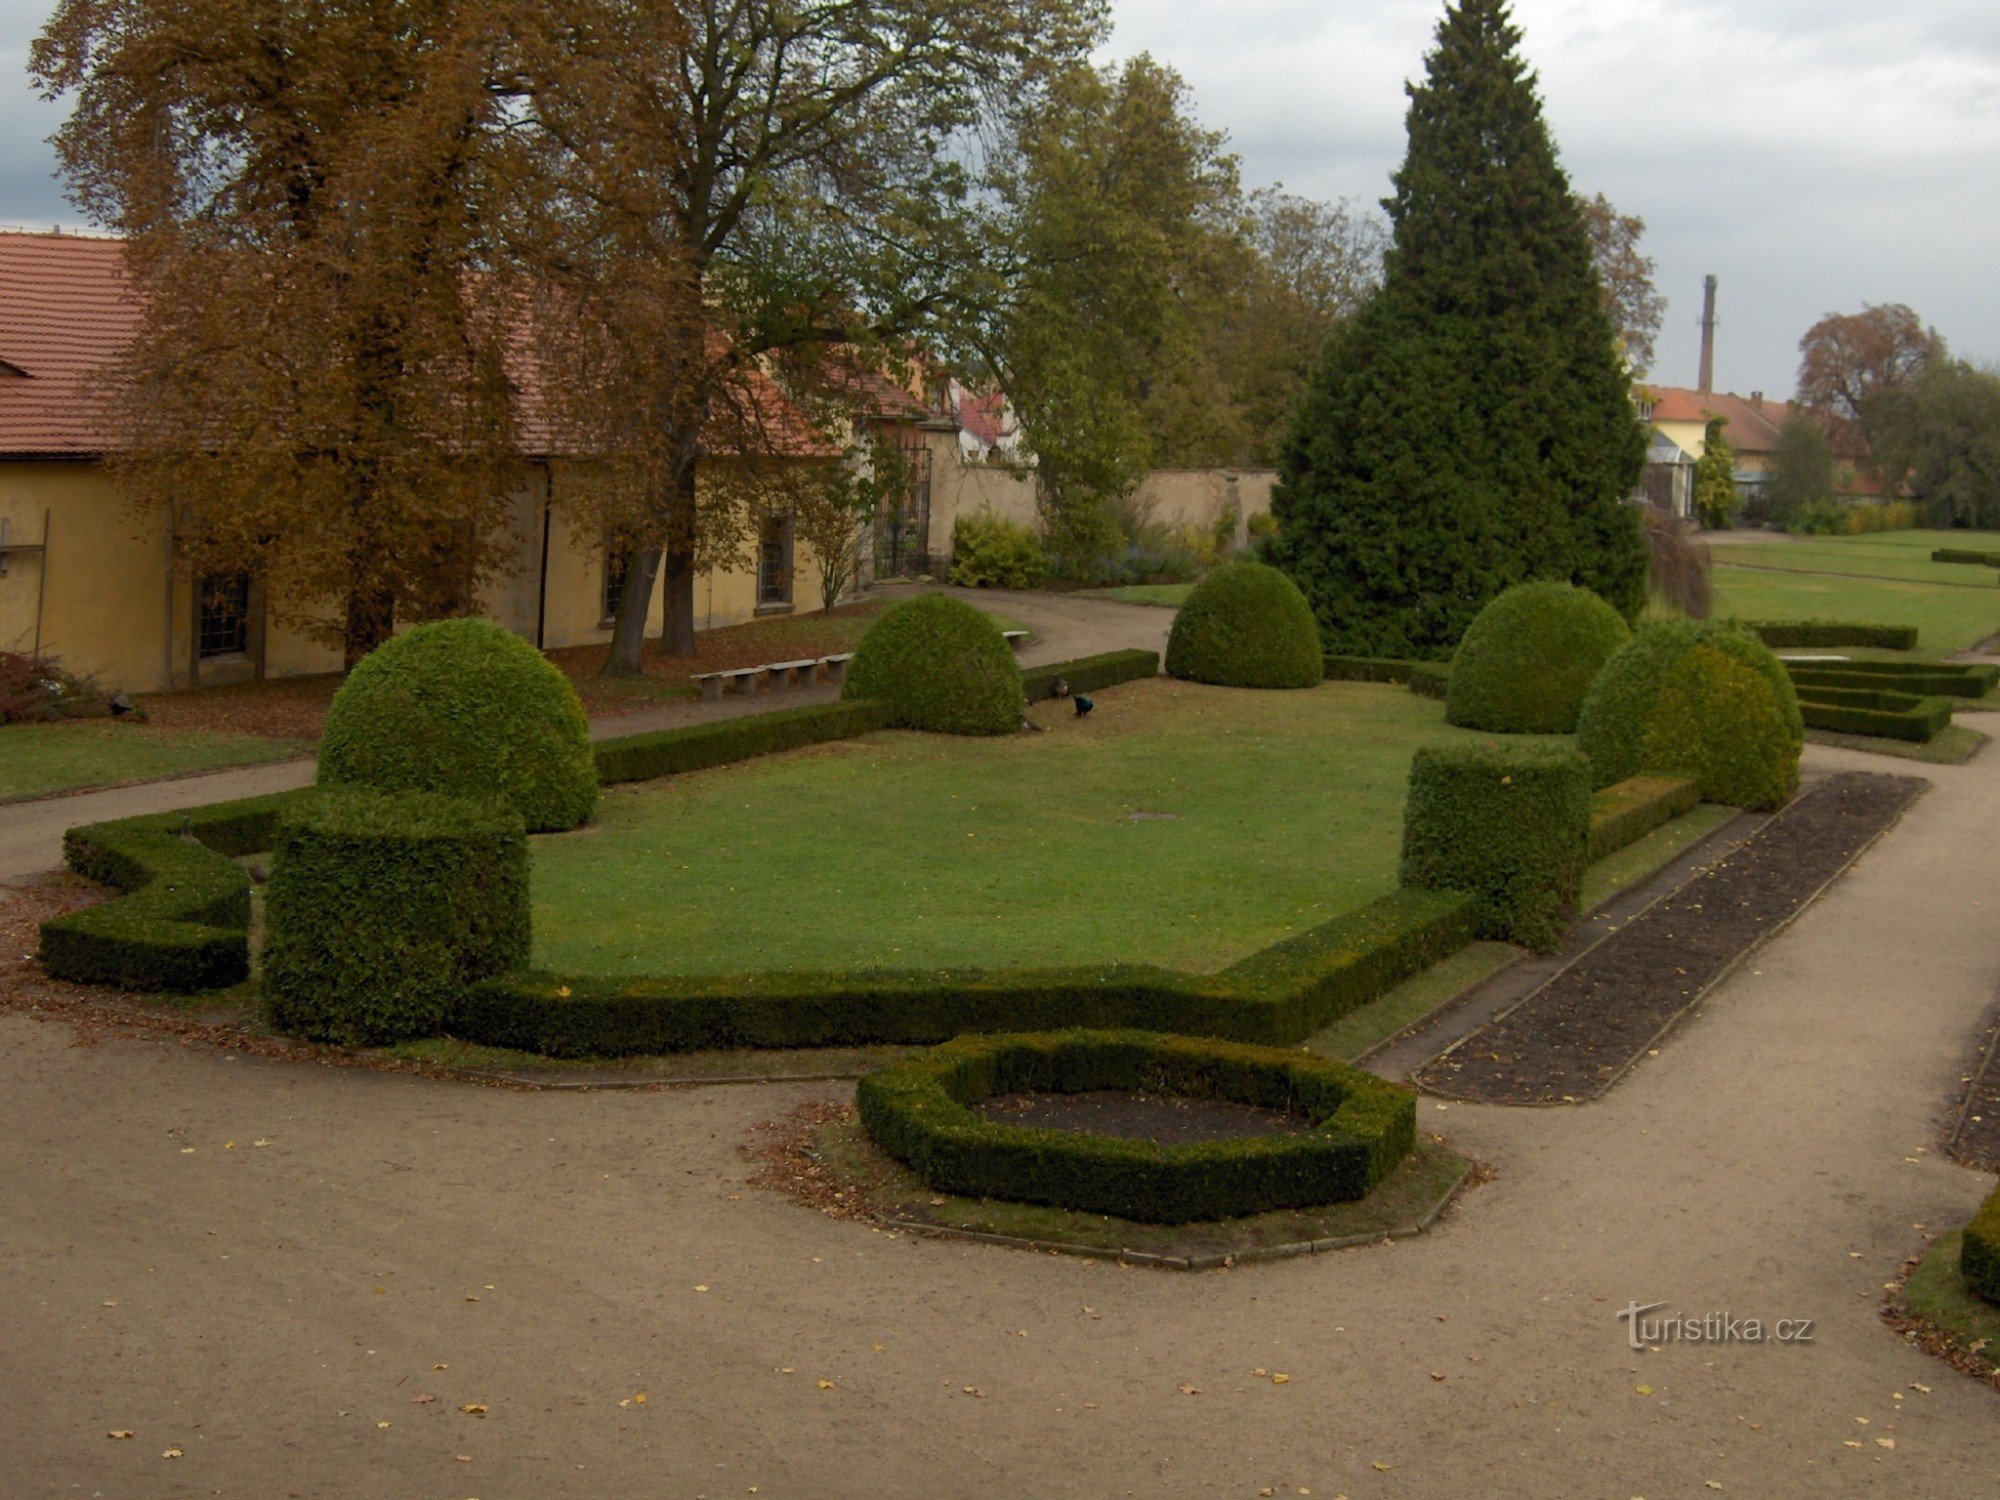 Осенний сад замка Либоховице